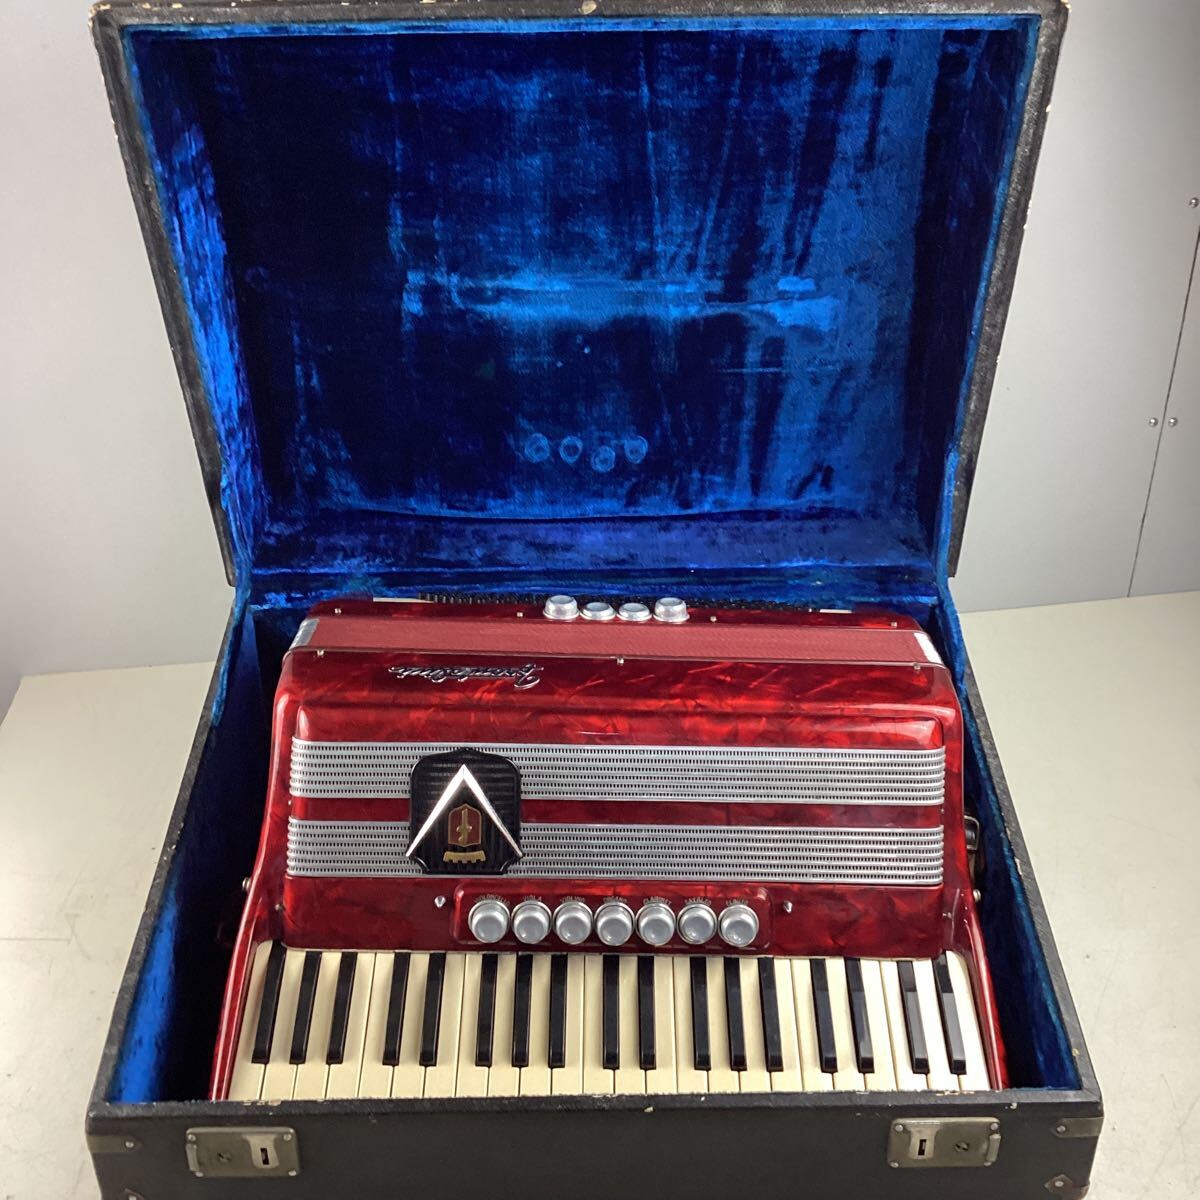 k5135 FRONTALINI аккордеон Италия производства 41 клавиатура 269/3 клавишные инструменты красный кейс жесткий чехол музыкальные инструменты музыка Event звук смог сделать б/у 